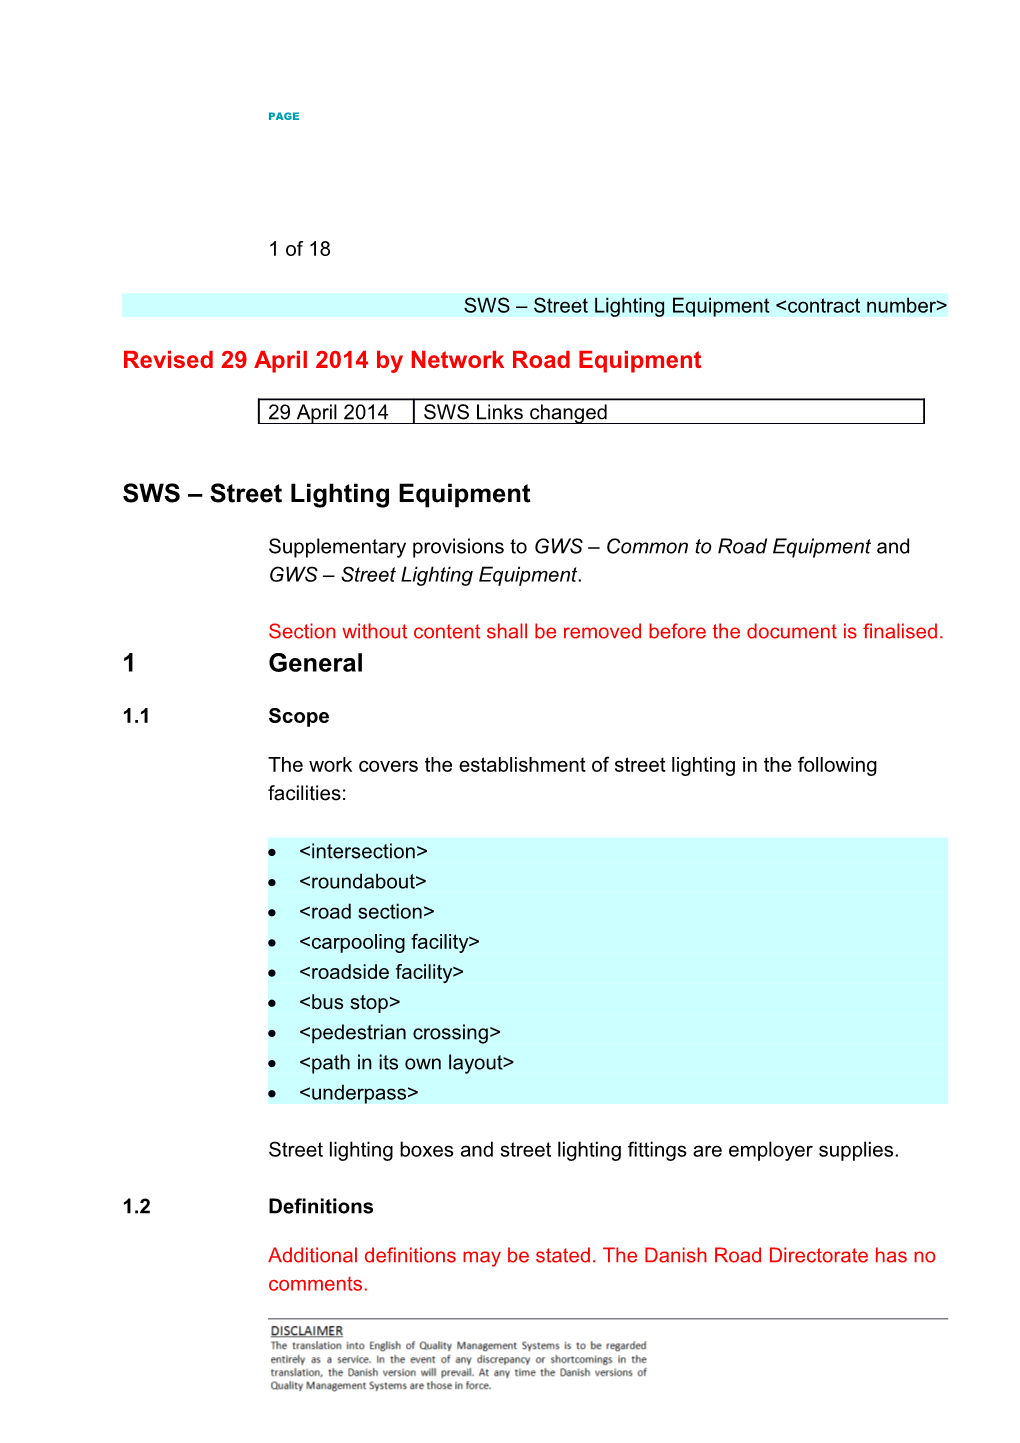 SWS Street Lighting Equipment &lt;Contract Number&gt;